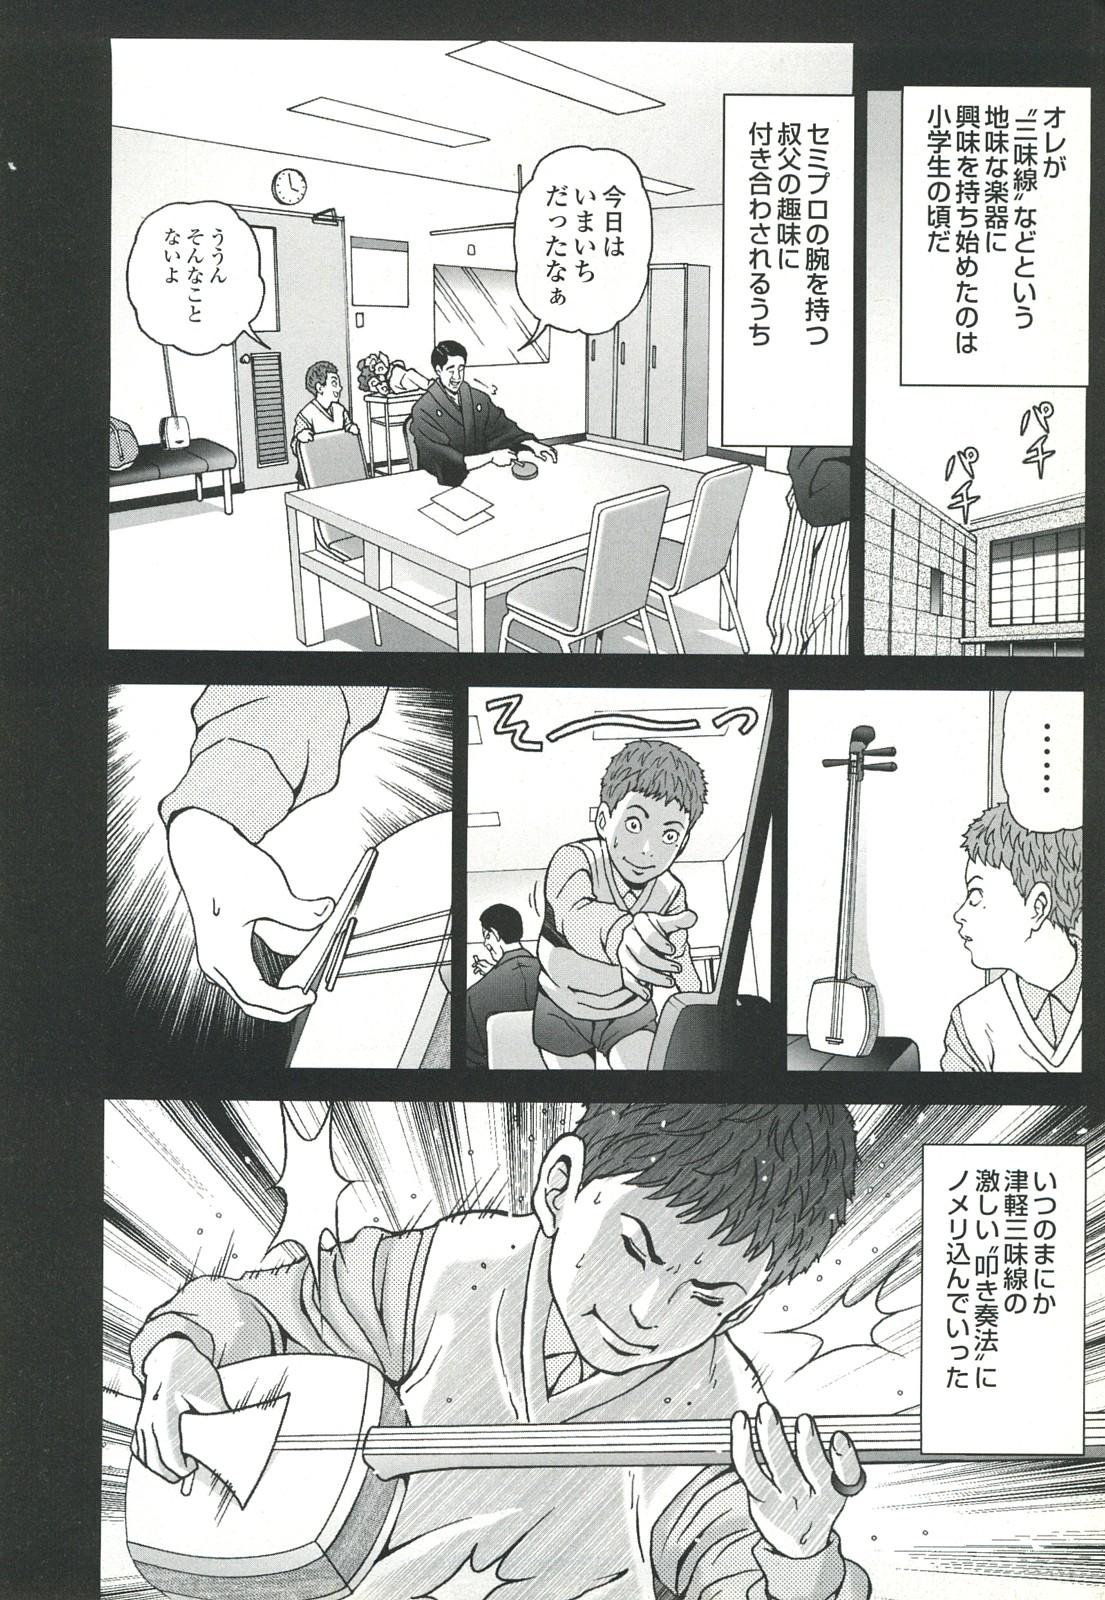 コミック裏モノJAPAN Vol.18 今井のりたつスペシャル号 25